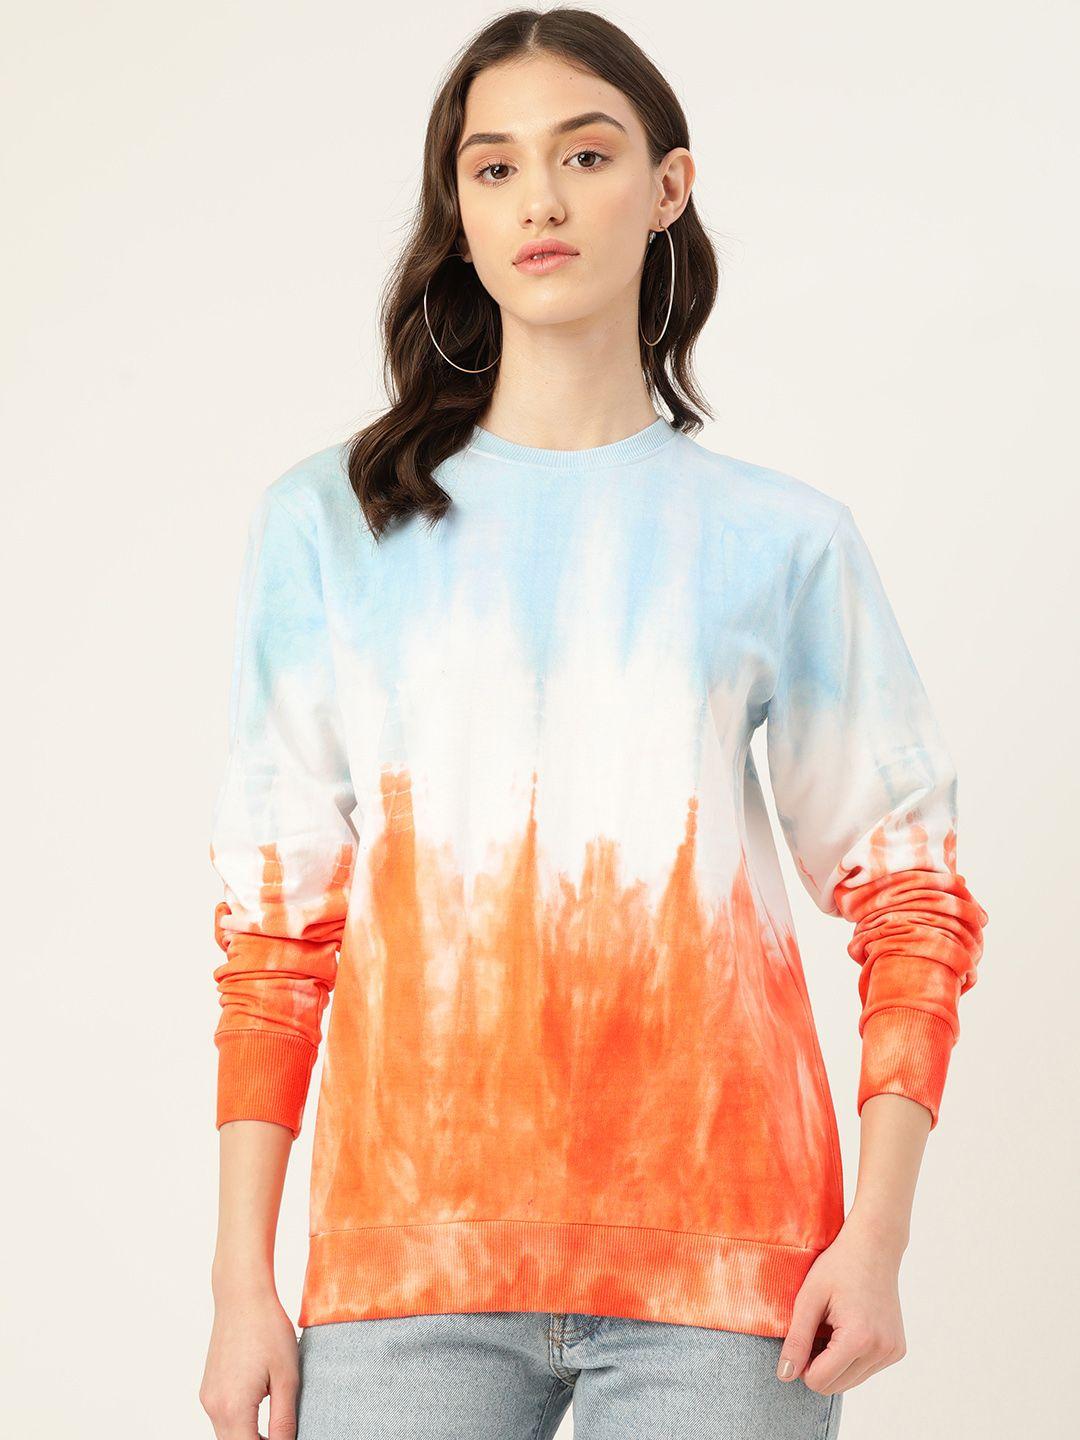 maaesa women abstract printed sweatshirt